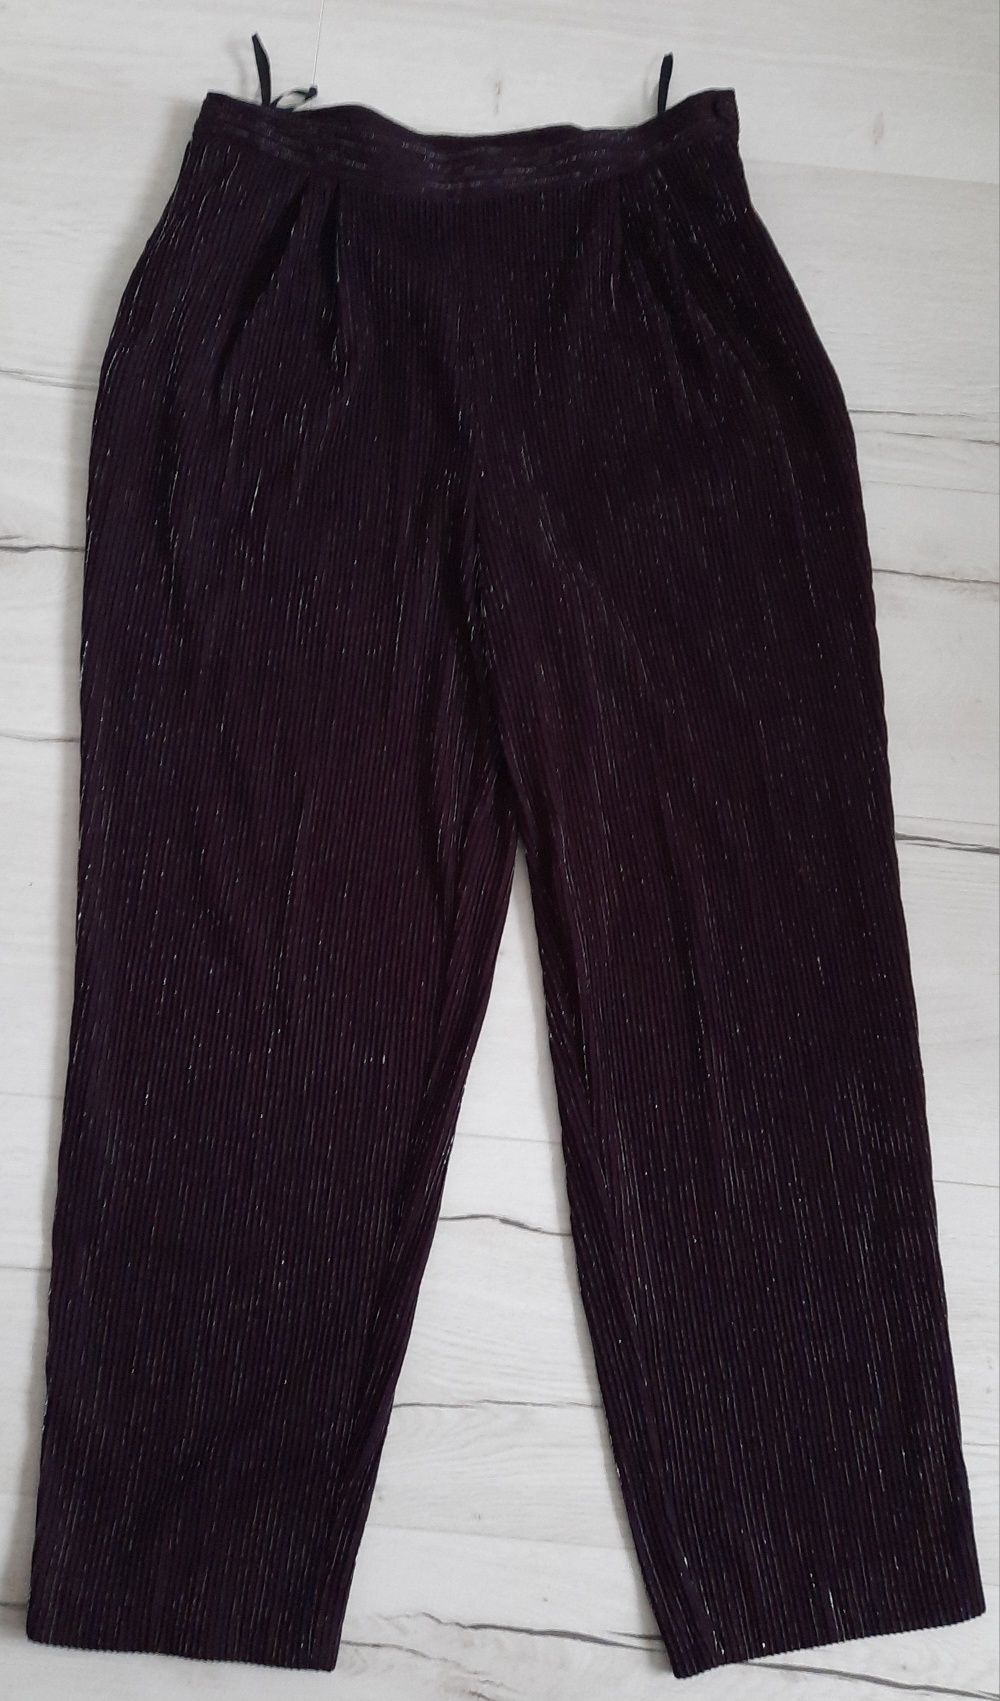 Spodnie błyszczące fioletowe śliwkowe 44 2 XL Meico Linea